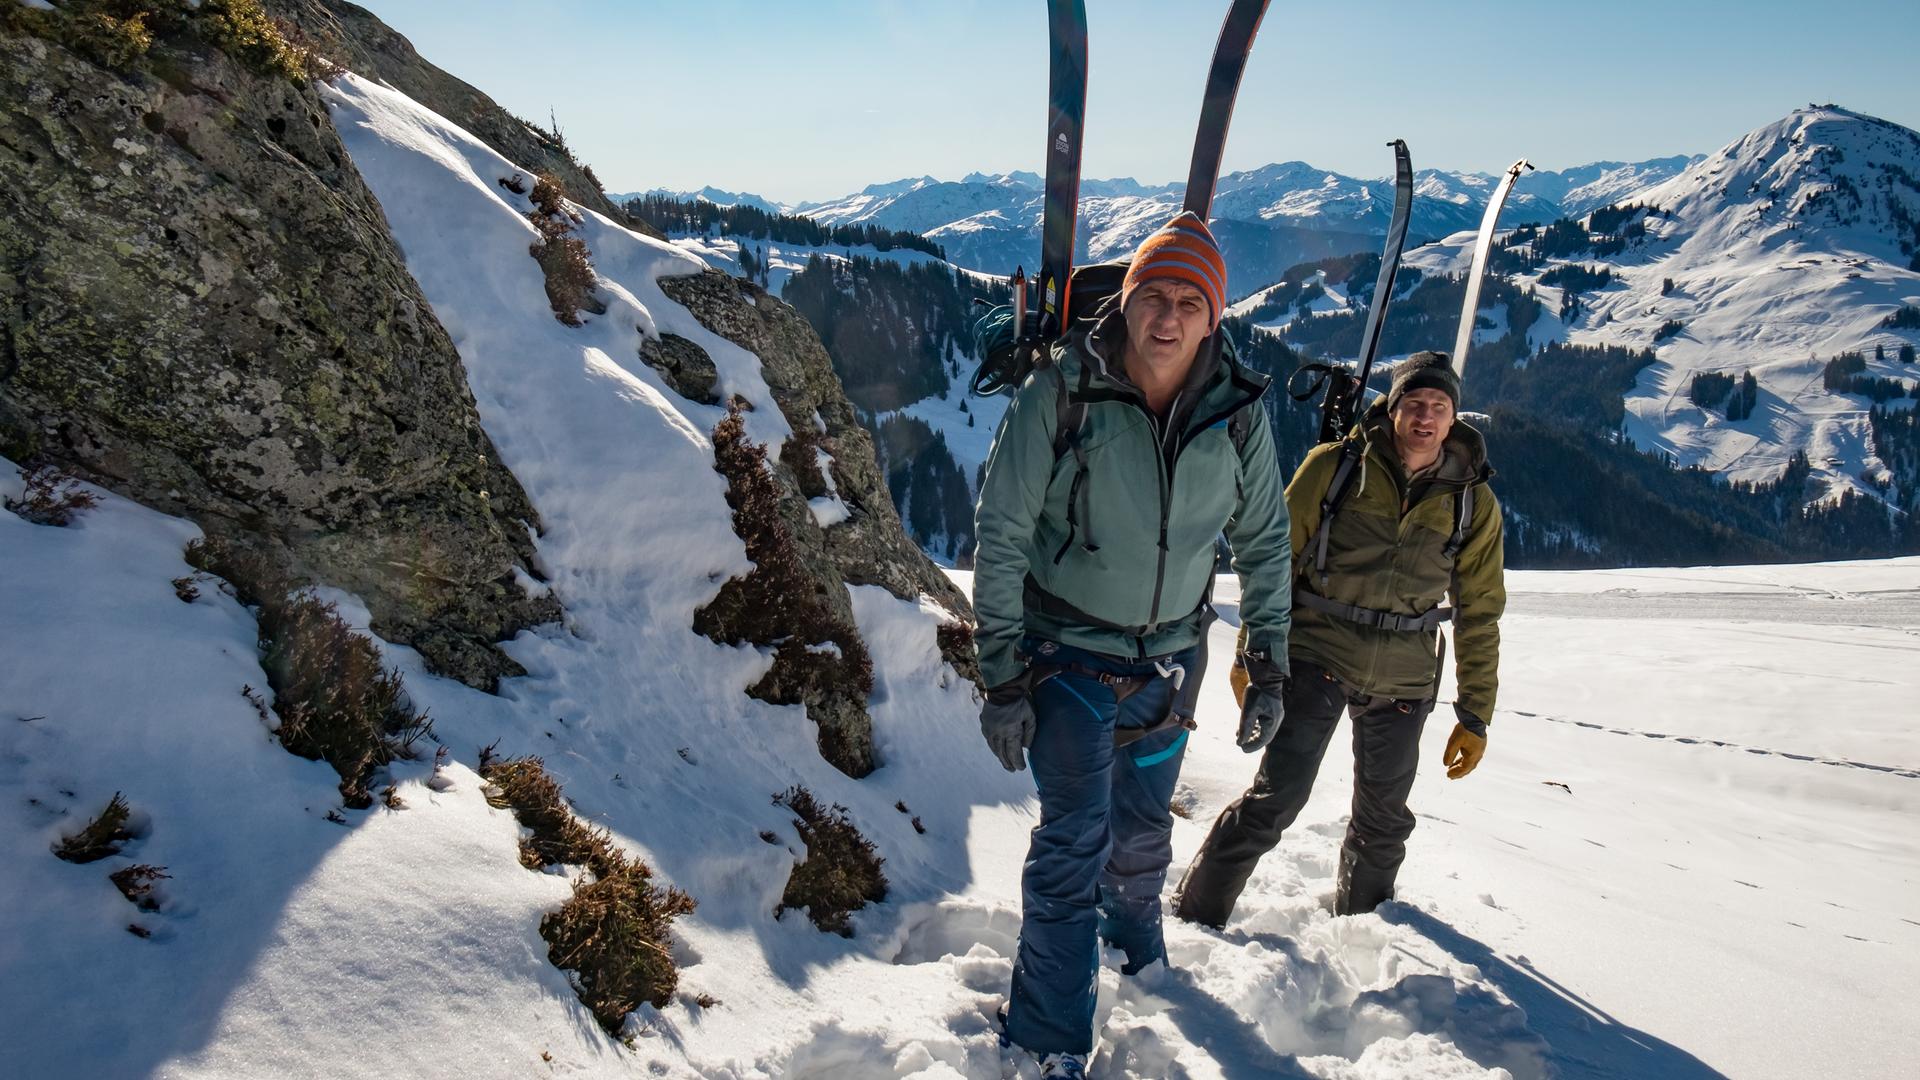 Szenenfoto aus der ZDF-Serie "Der Bergdoktor" mit zwei Hauptdarstellern bei einer Bergtour im Winter.